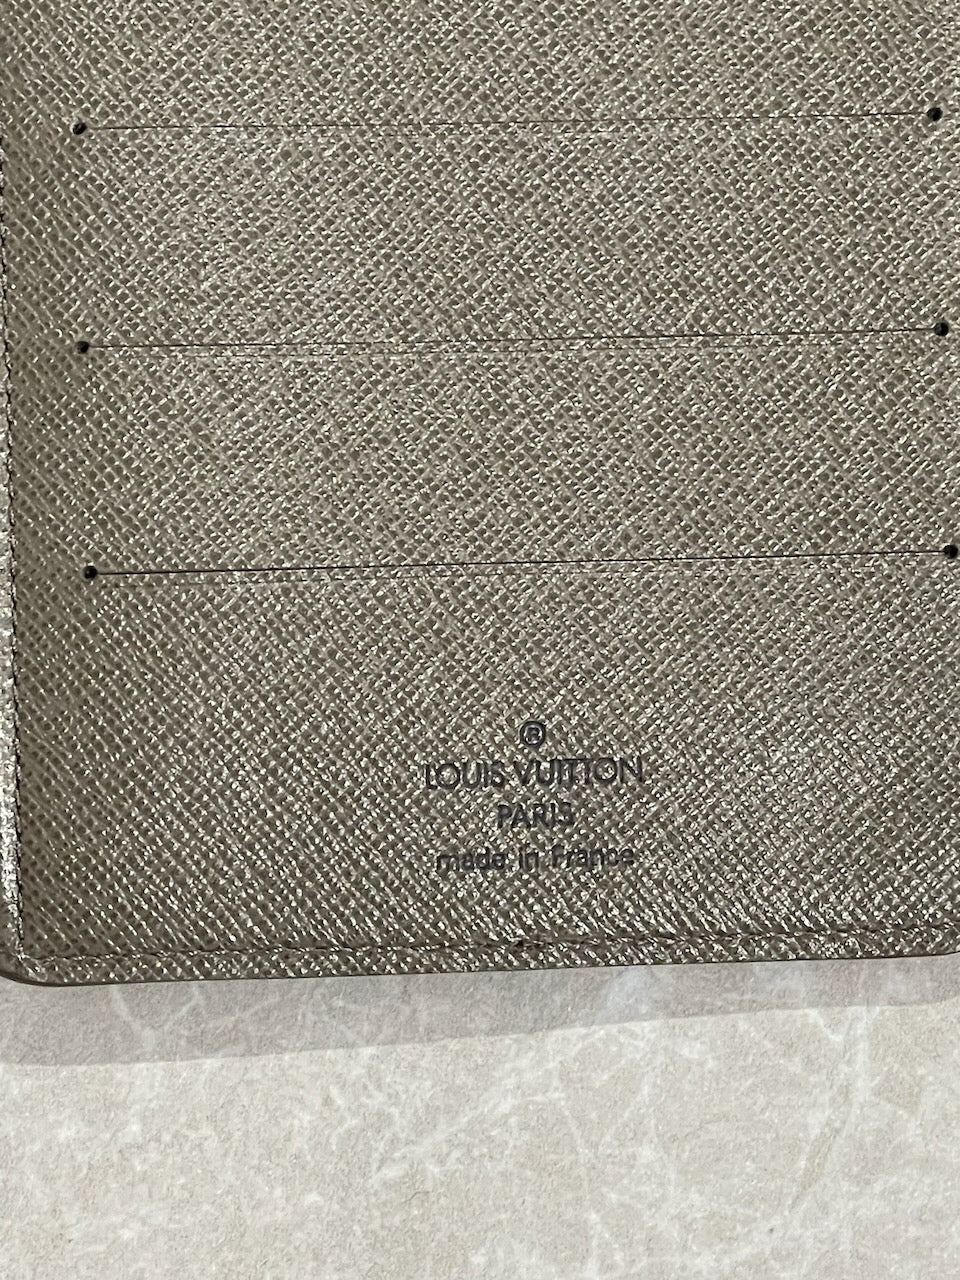 Couverture documents Louis Vuitton